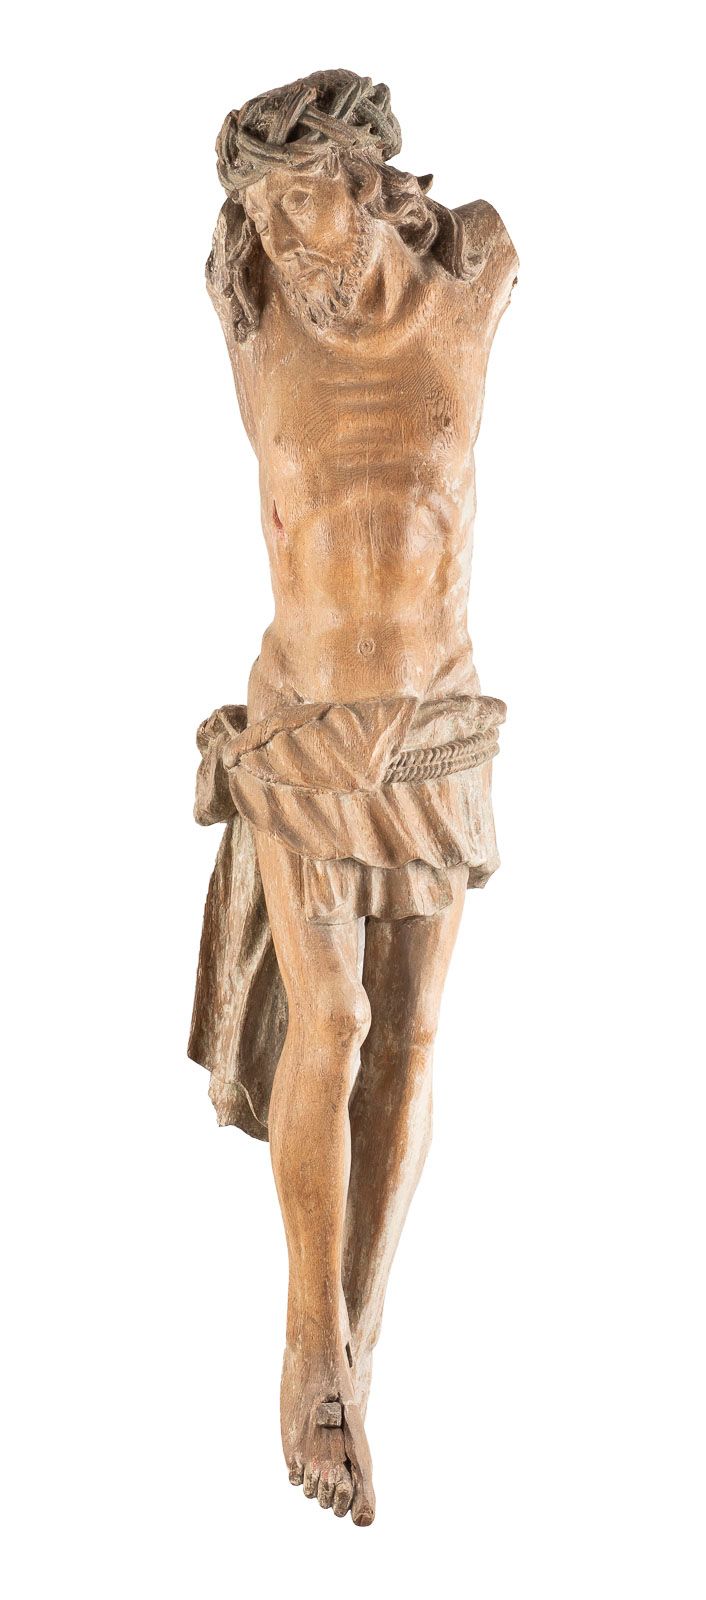 Null 基督圣体纪念碑 佛兰德斯，荷兰，16世纪。 雕塑般的橡木雕刻，深色染色，彩色镶嵌。高123厘米。描绘基督带着荆棘冠冕和腰带的全图为三甲式。部分损坏，镶&hellip;